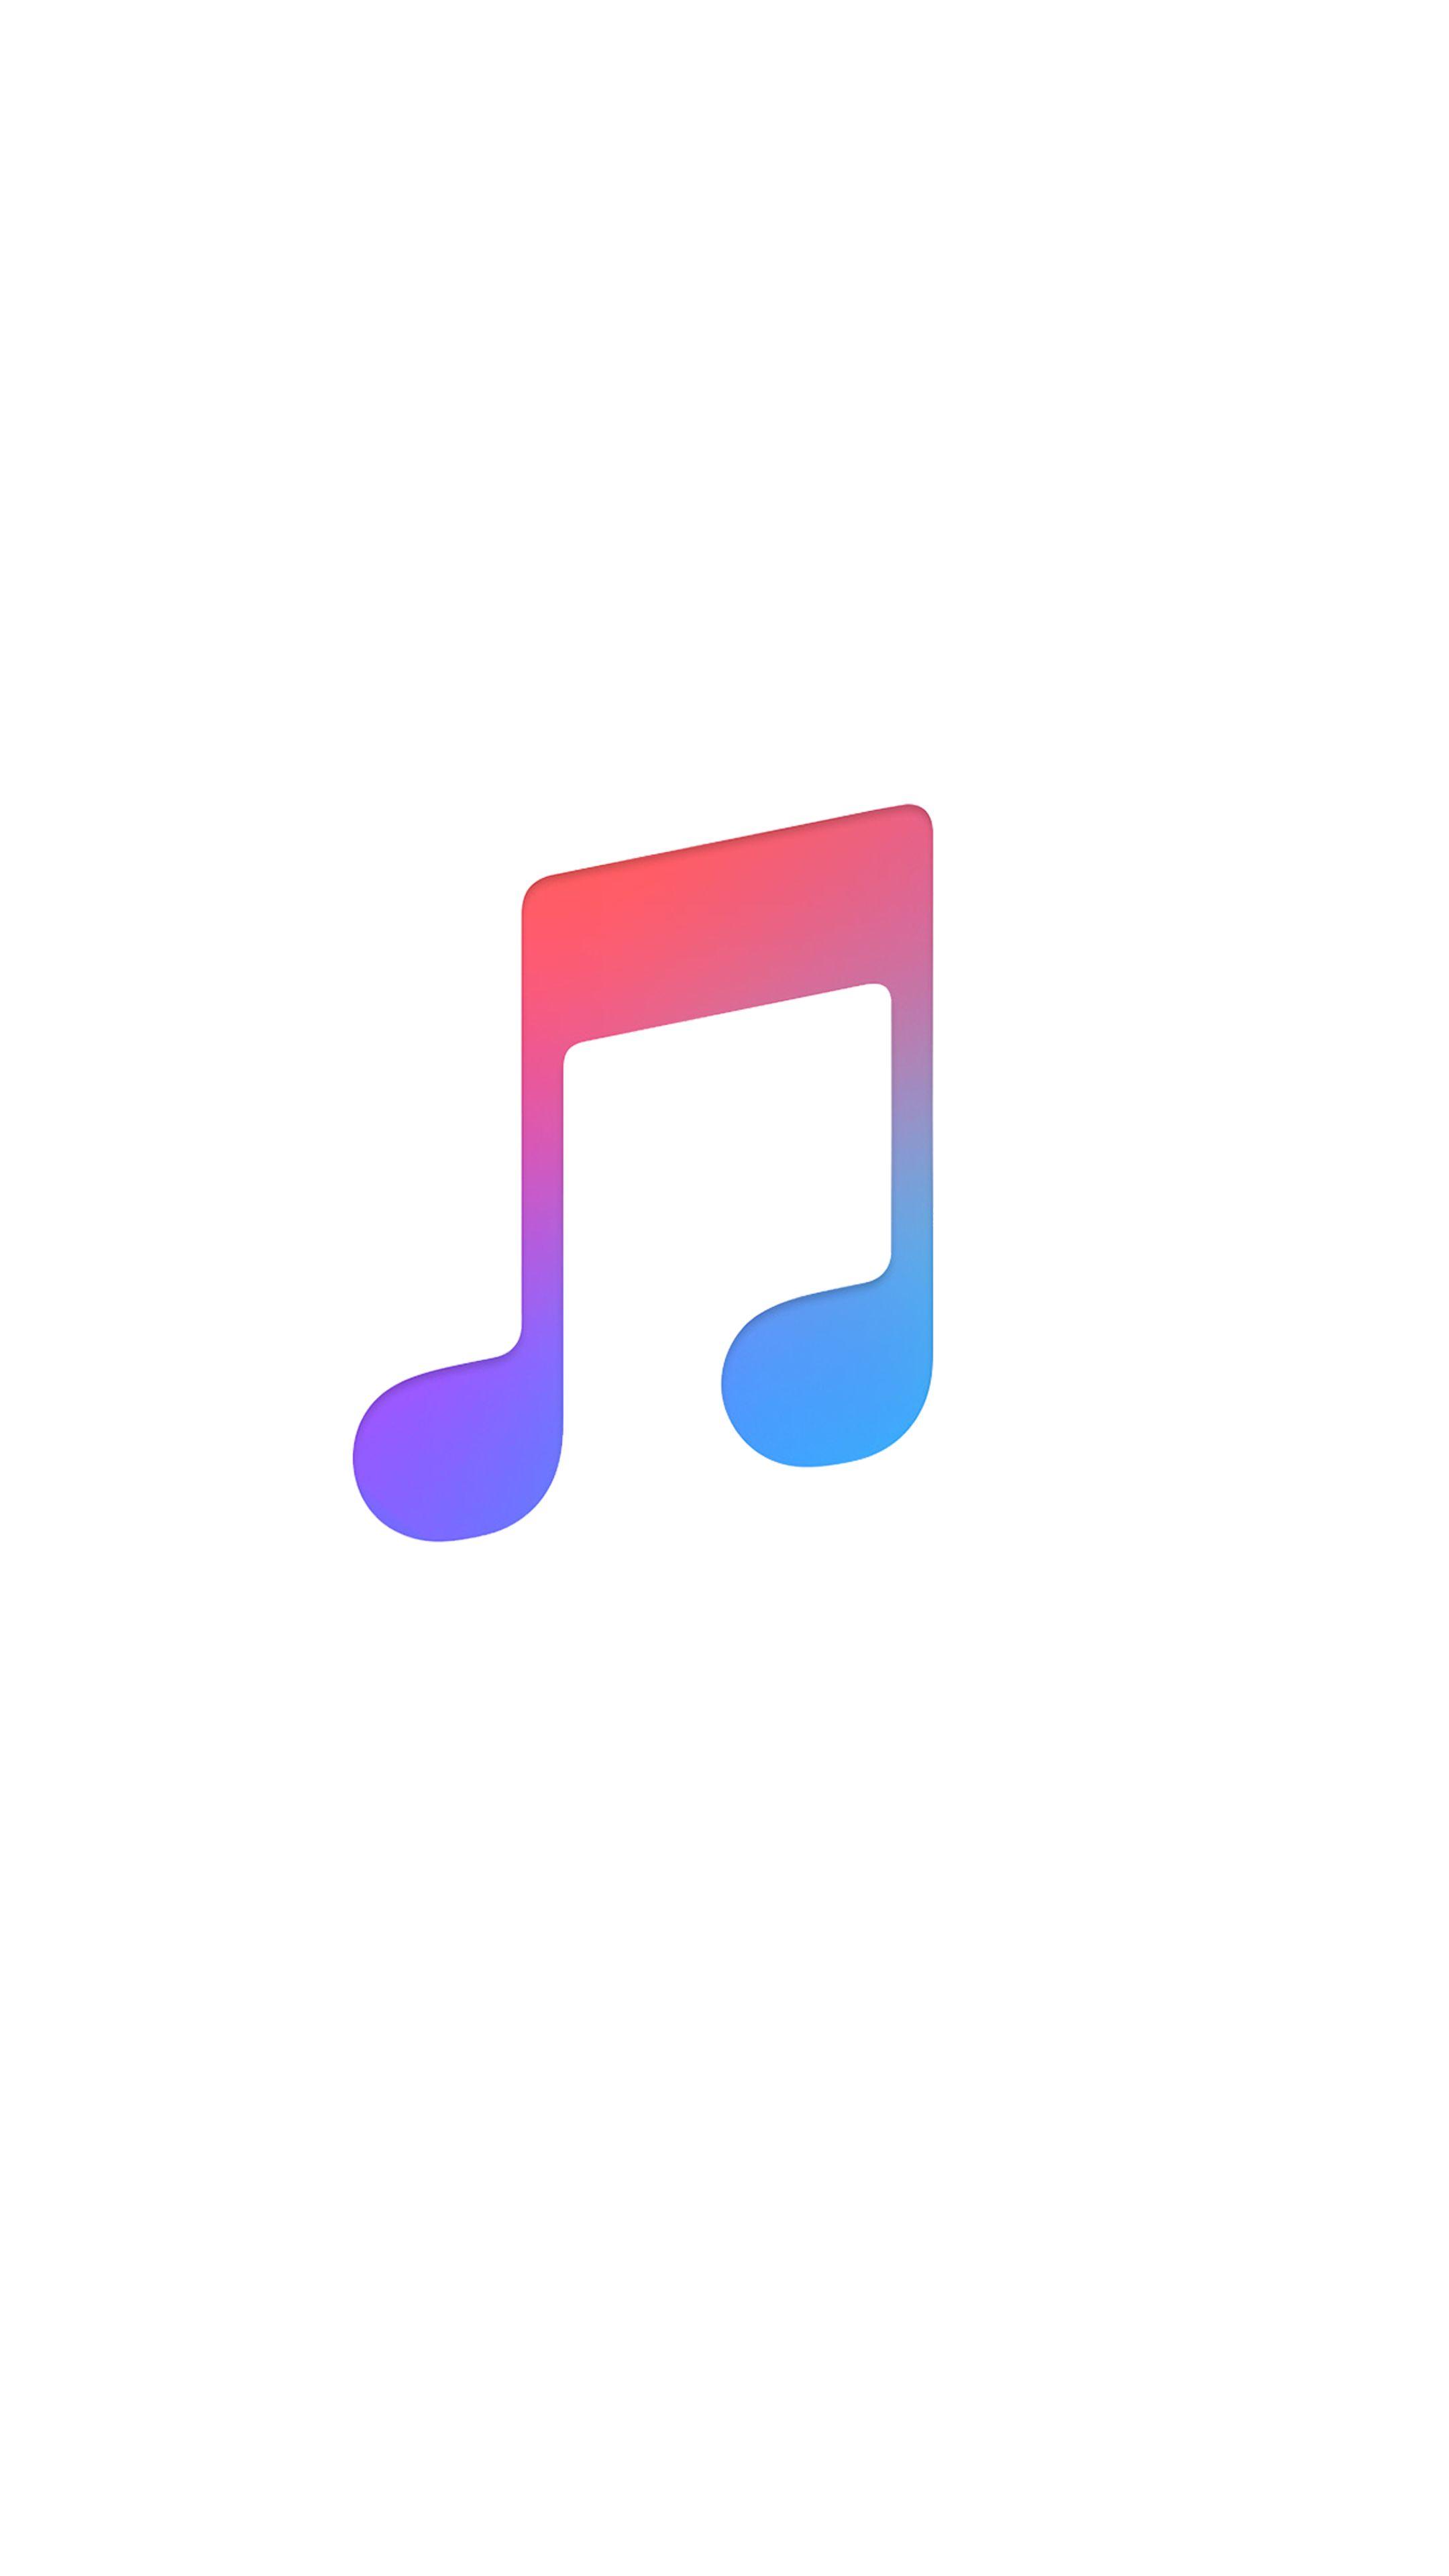 Apple Music Logo - Apple music logo wallpaper. Music logo, Apple wallpaper, Music